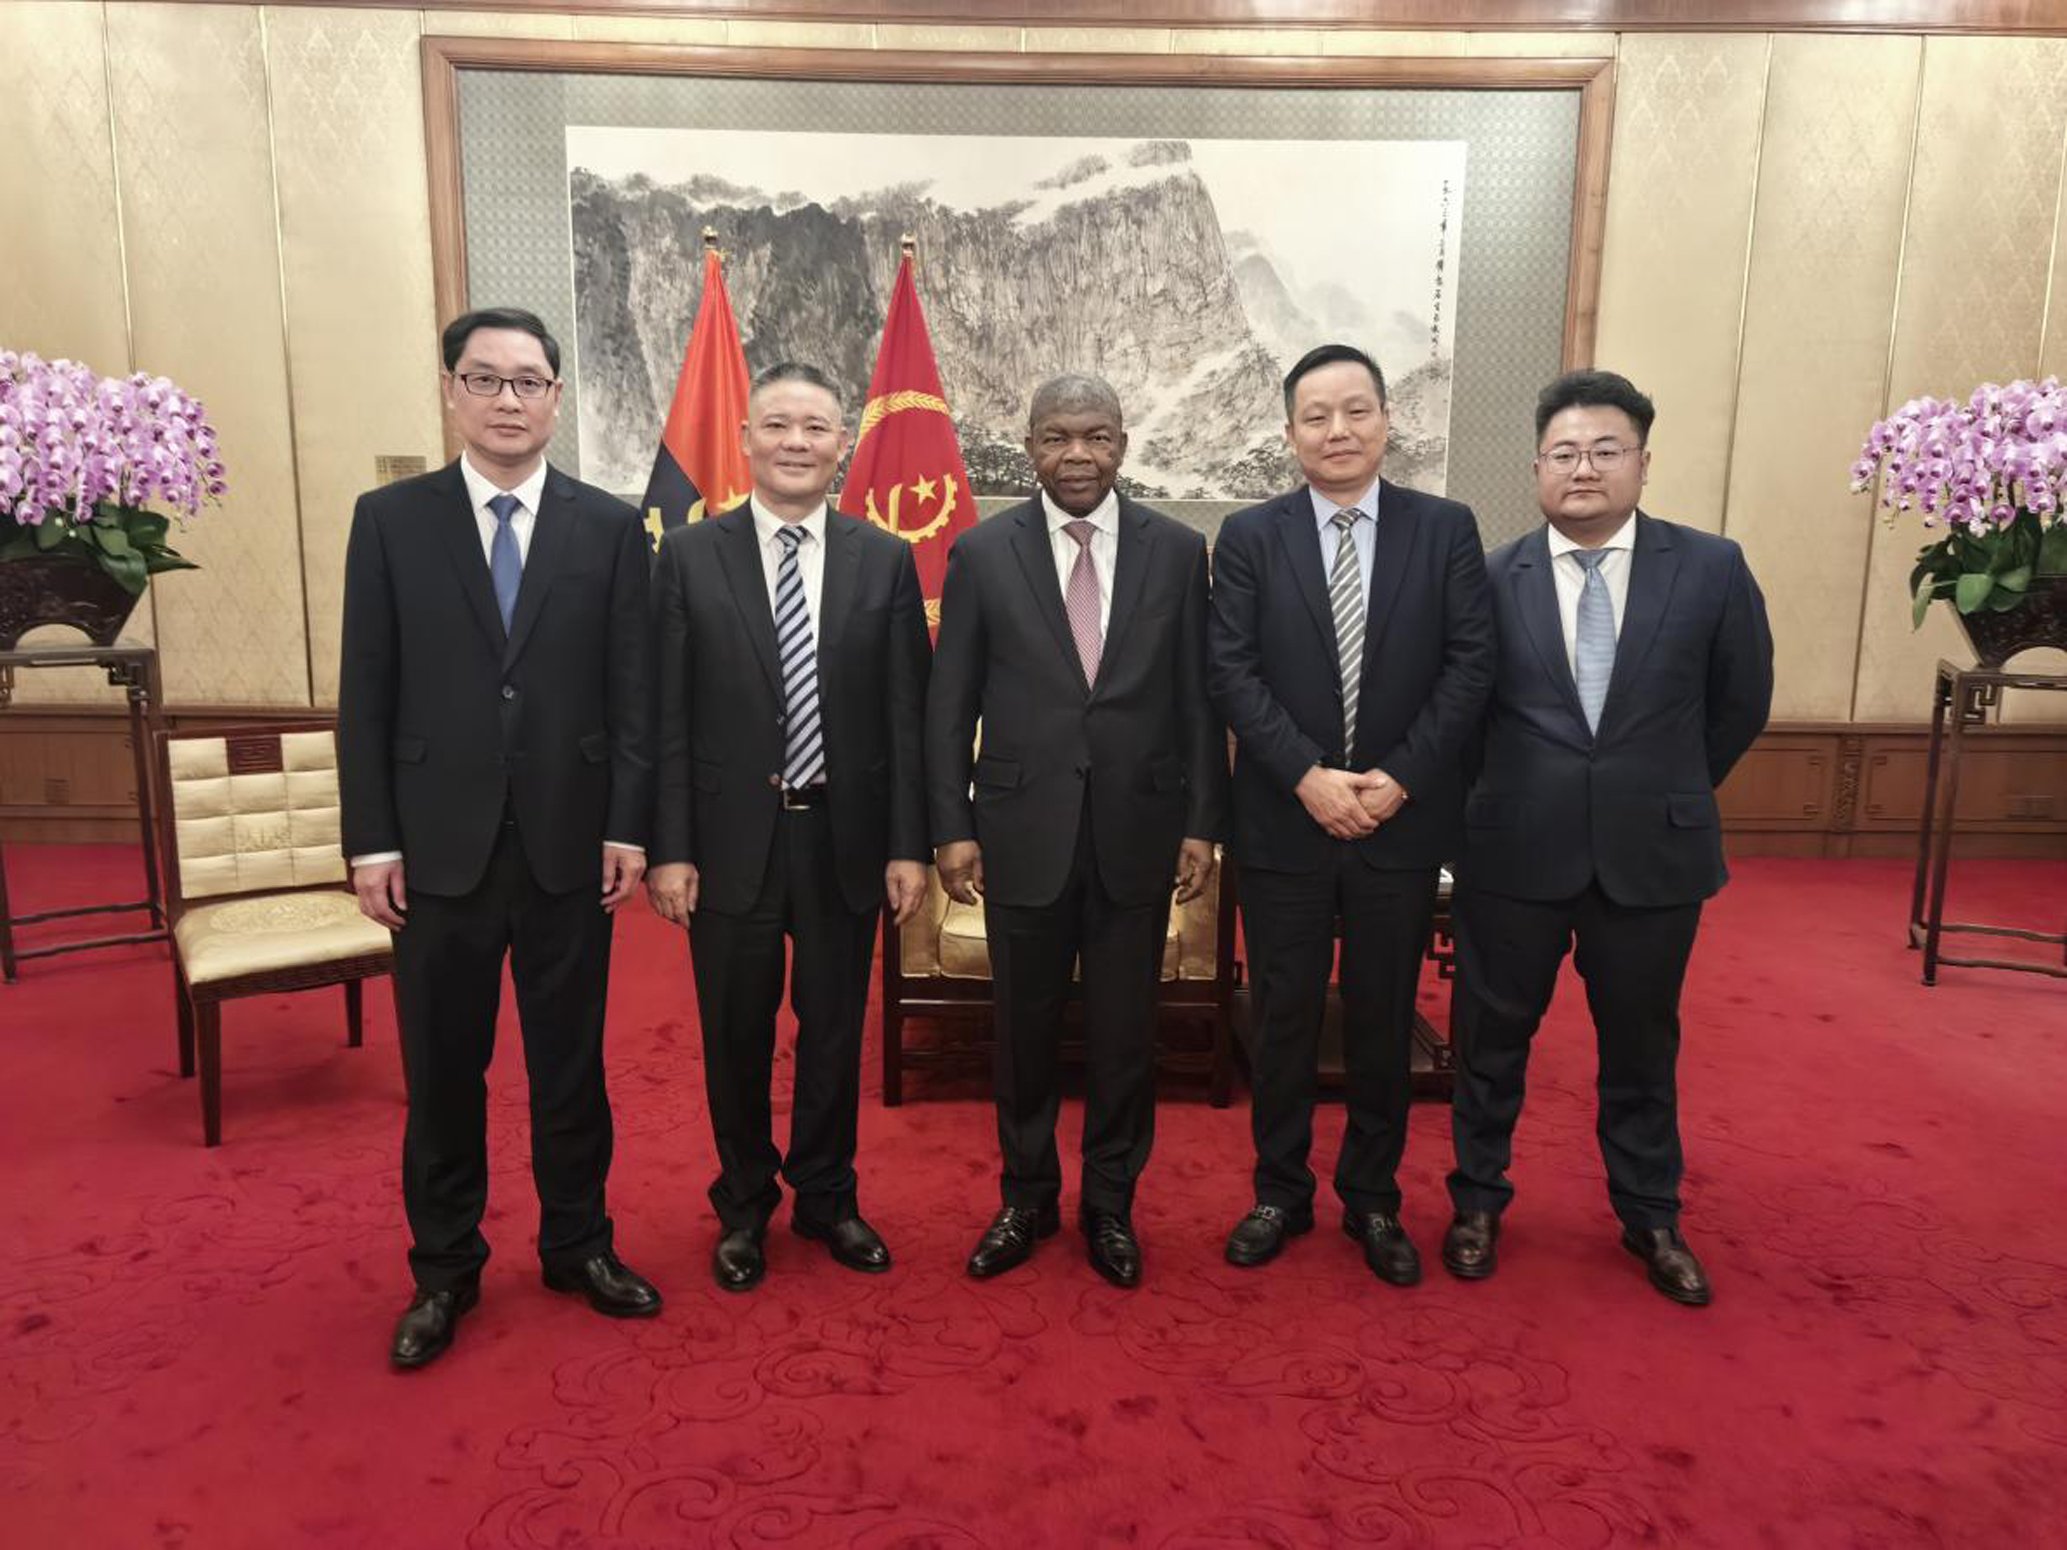 安哥拉总统洛伦索在北京会见院长肖先波一行